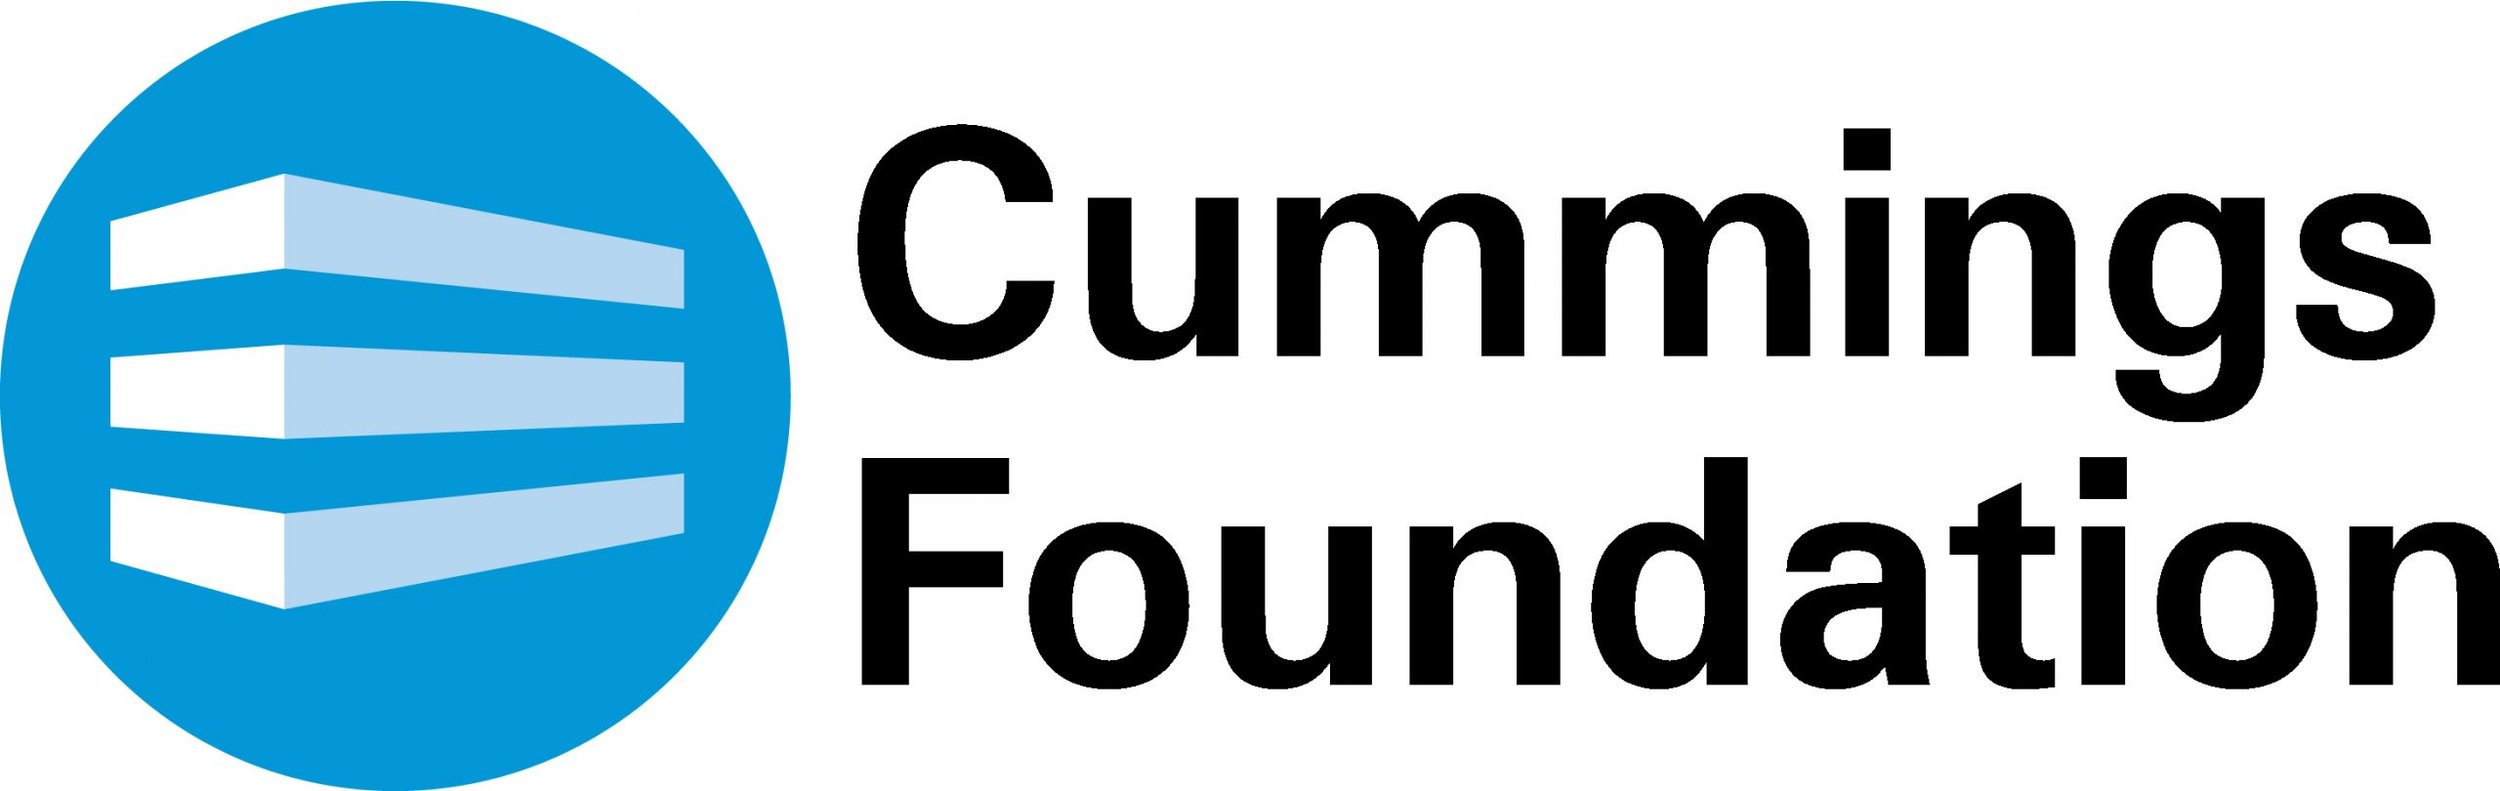 Cummings_Foundation_logo-scaled.jpeg